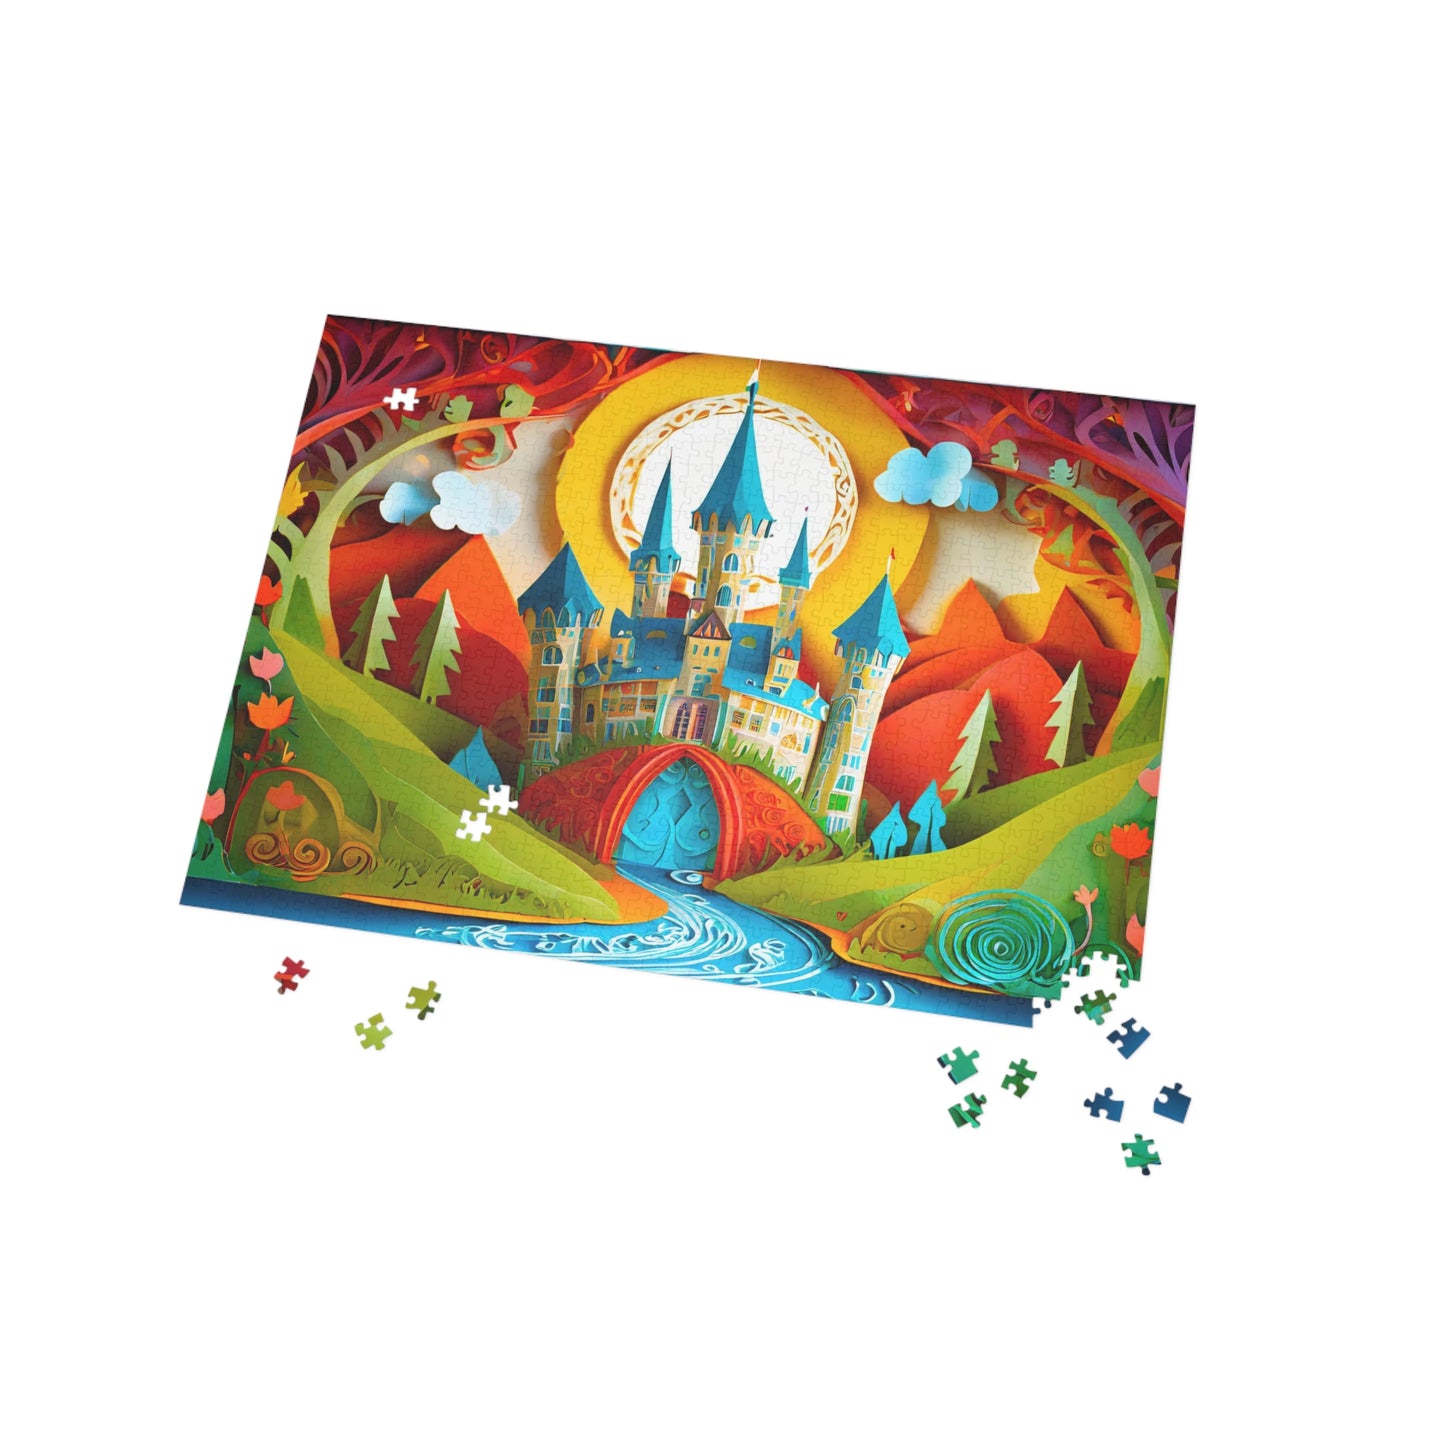 Fantastical Castle2 - Puzzle (500, 1000-Piece)